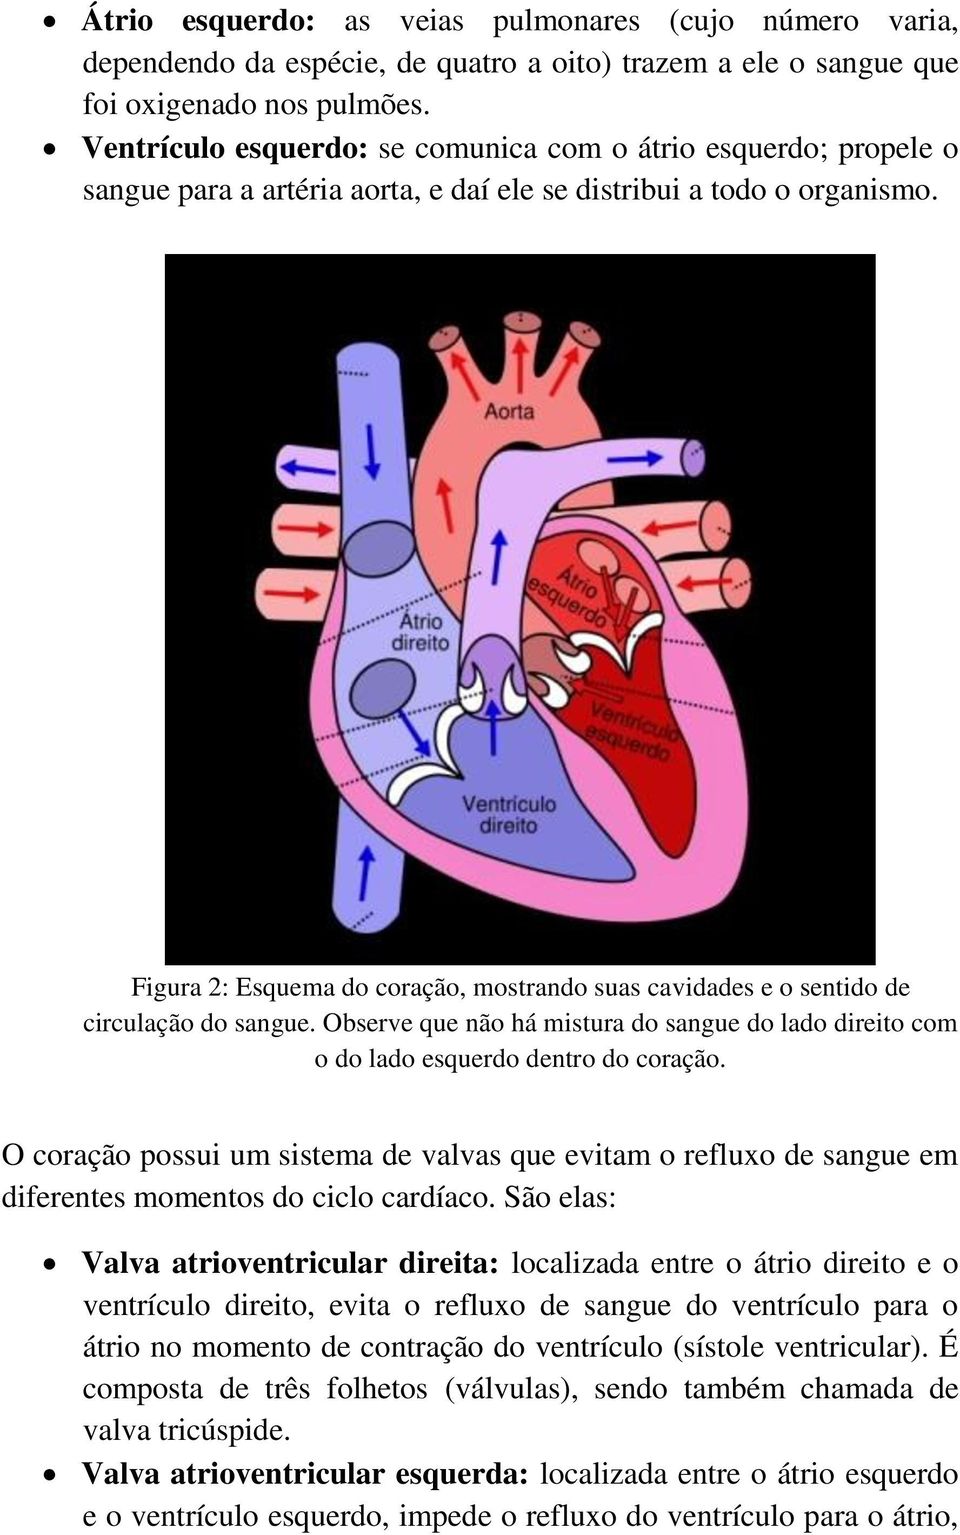 Figura 2: Esquema do coração, mostrando suas cavidades e o sentido de circulação do sangue. Observe que não há mistura do sangue do lado direito com o do lado esquerdo dentro do coração.